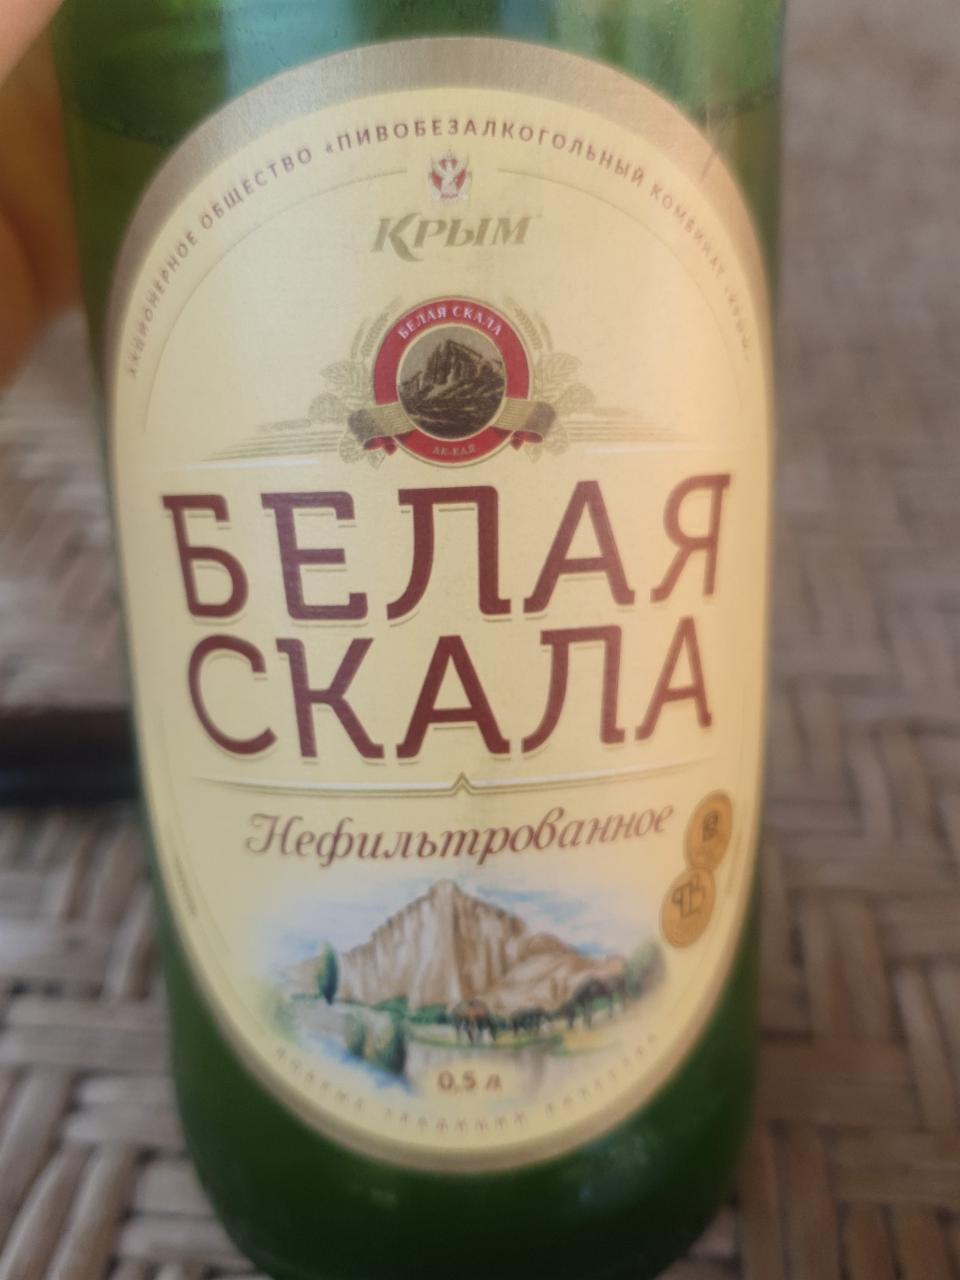 Фото - пиво белая скала нефильтрованное Крым